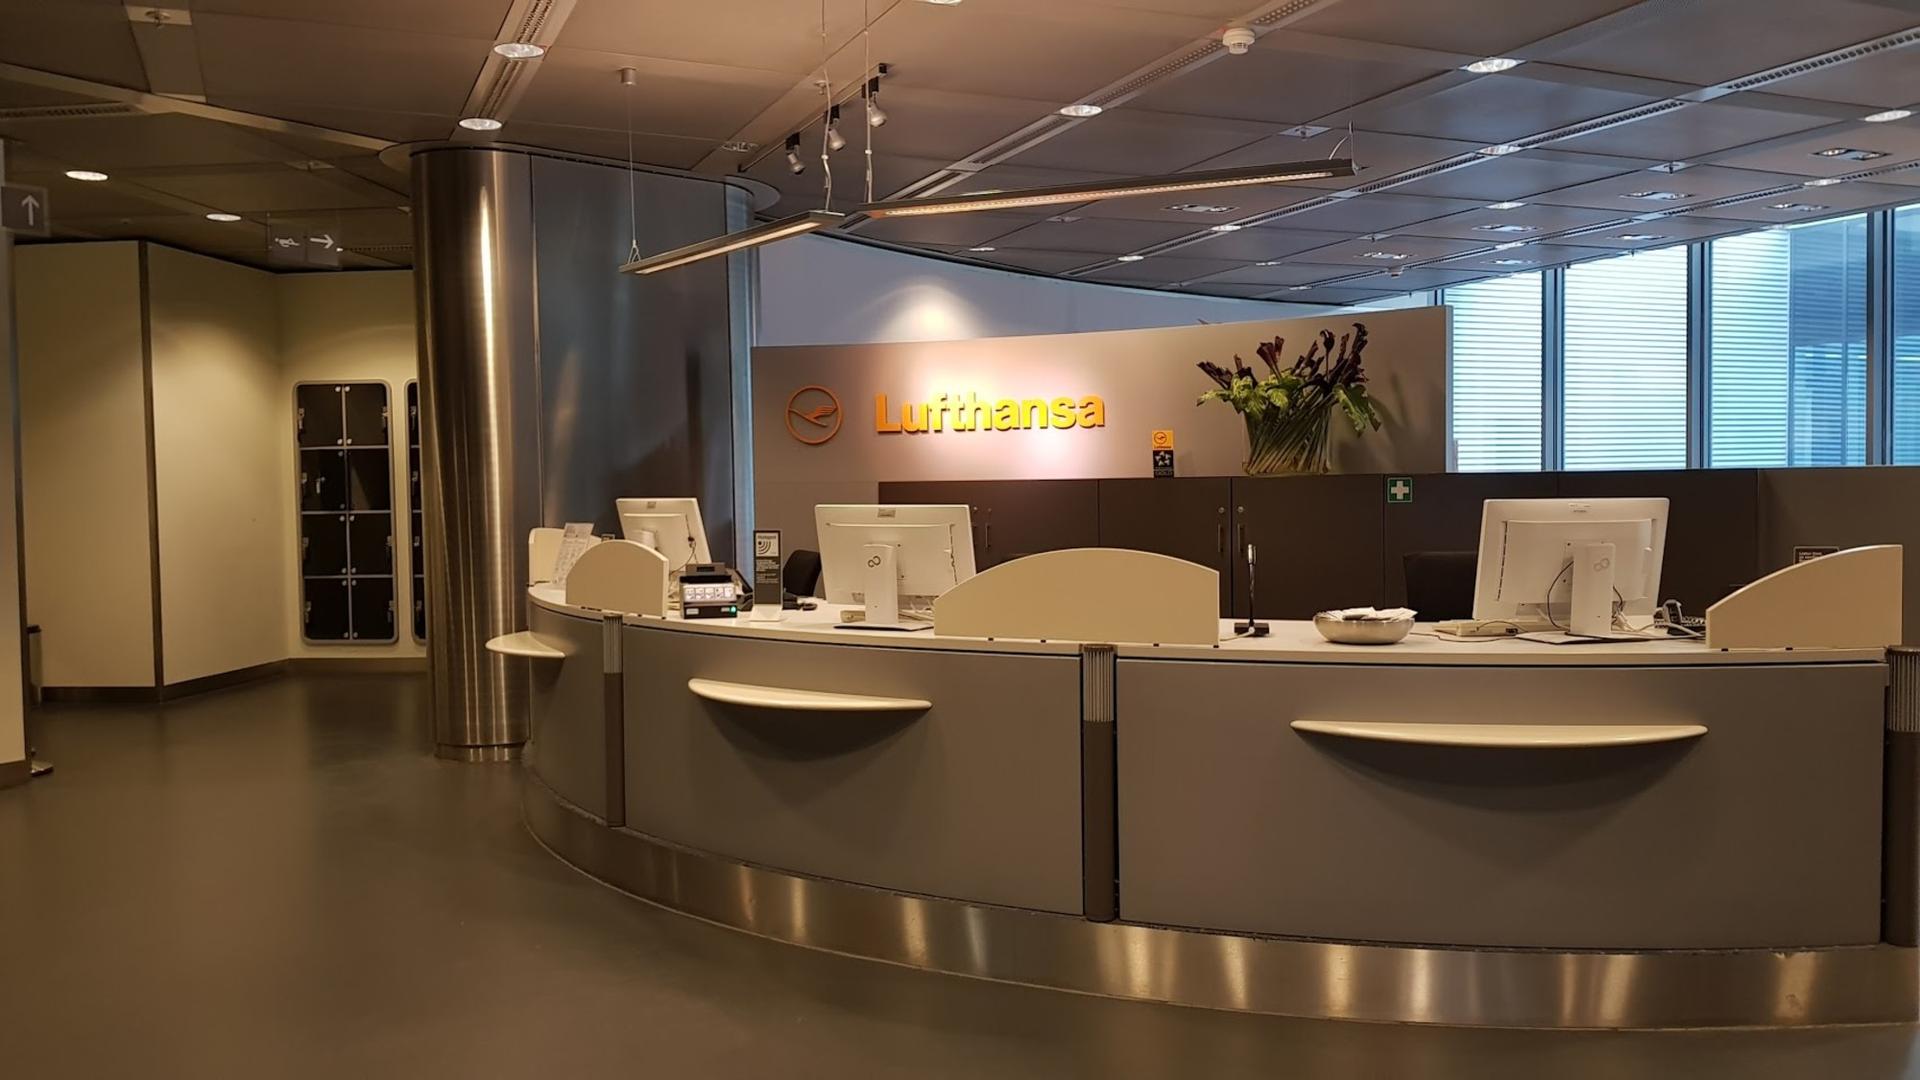 Lufthansa Business Lounge (Non-Schengen, Gates B44-B48) image 41 of 46